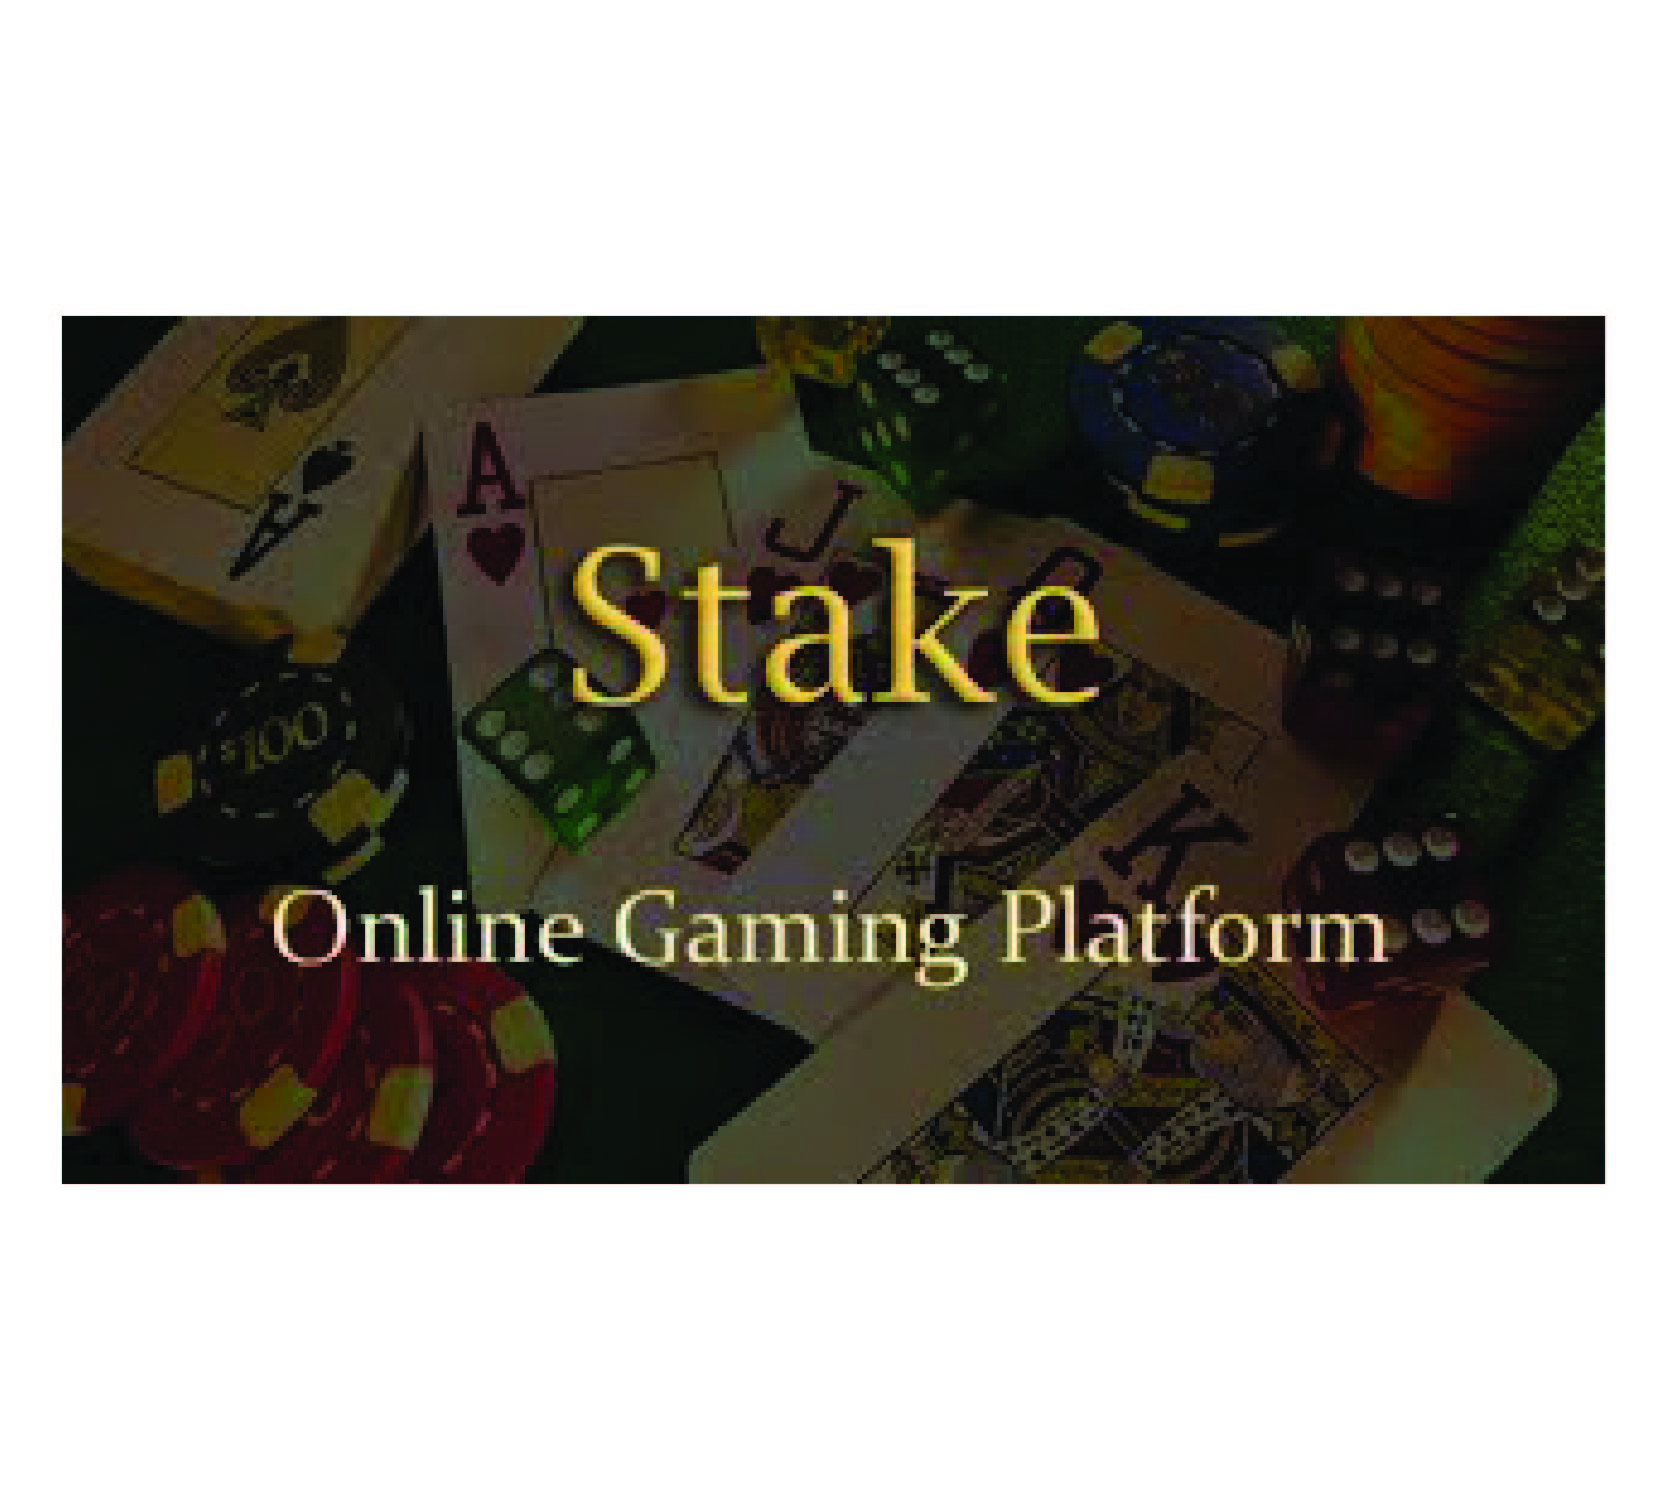 Stake - 在线赌场游戏平台| Laravel 单页应用程序